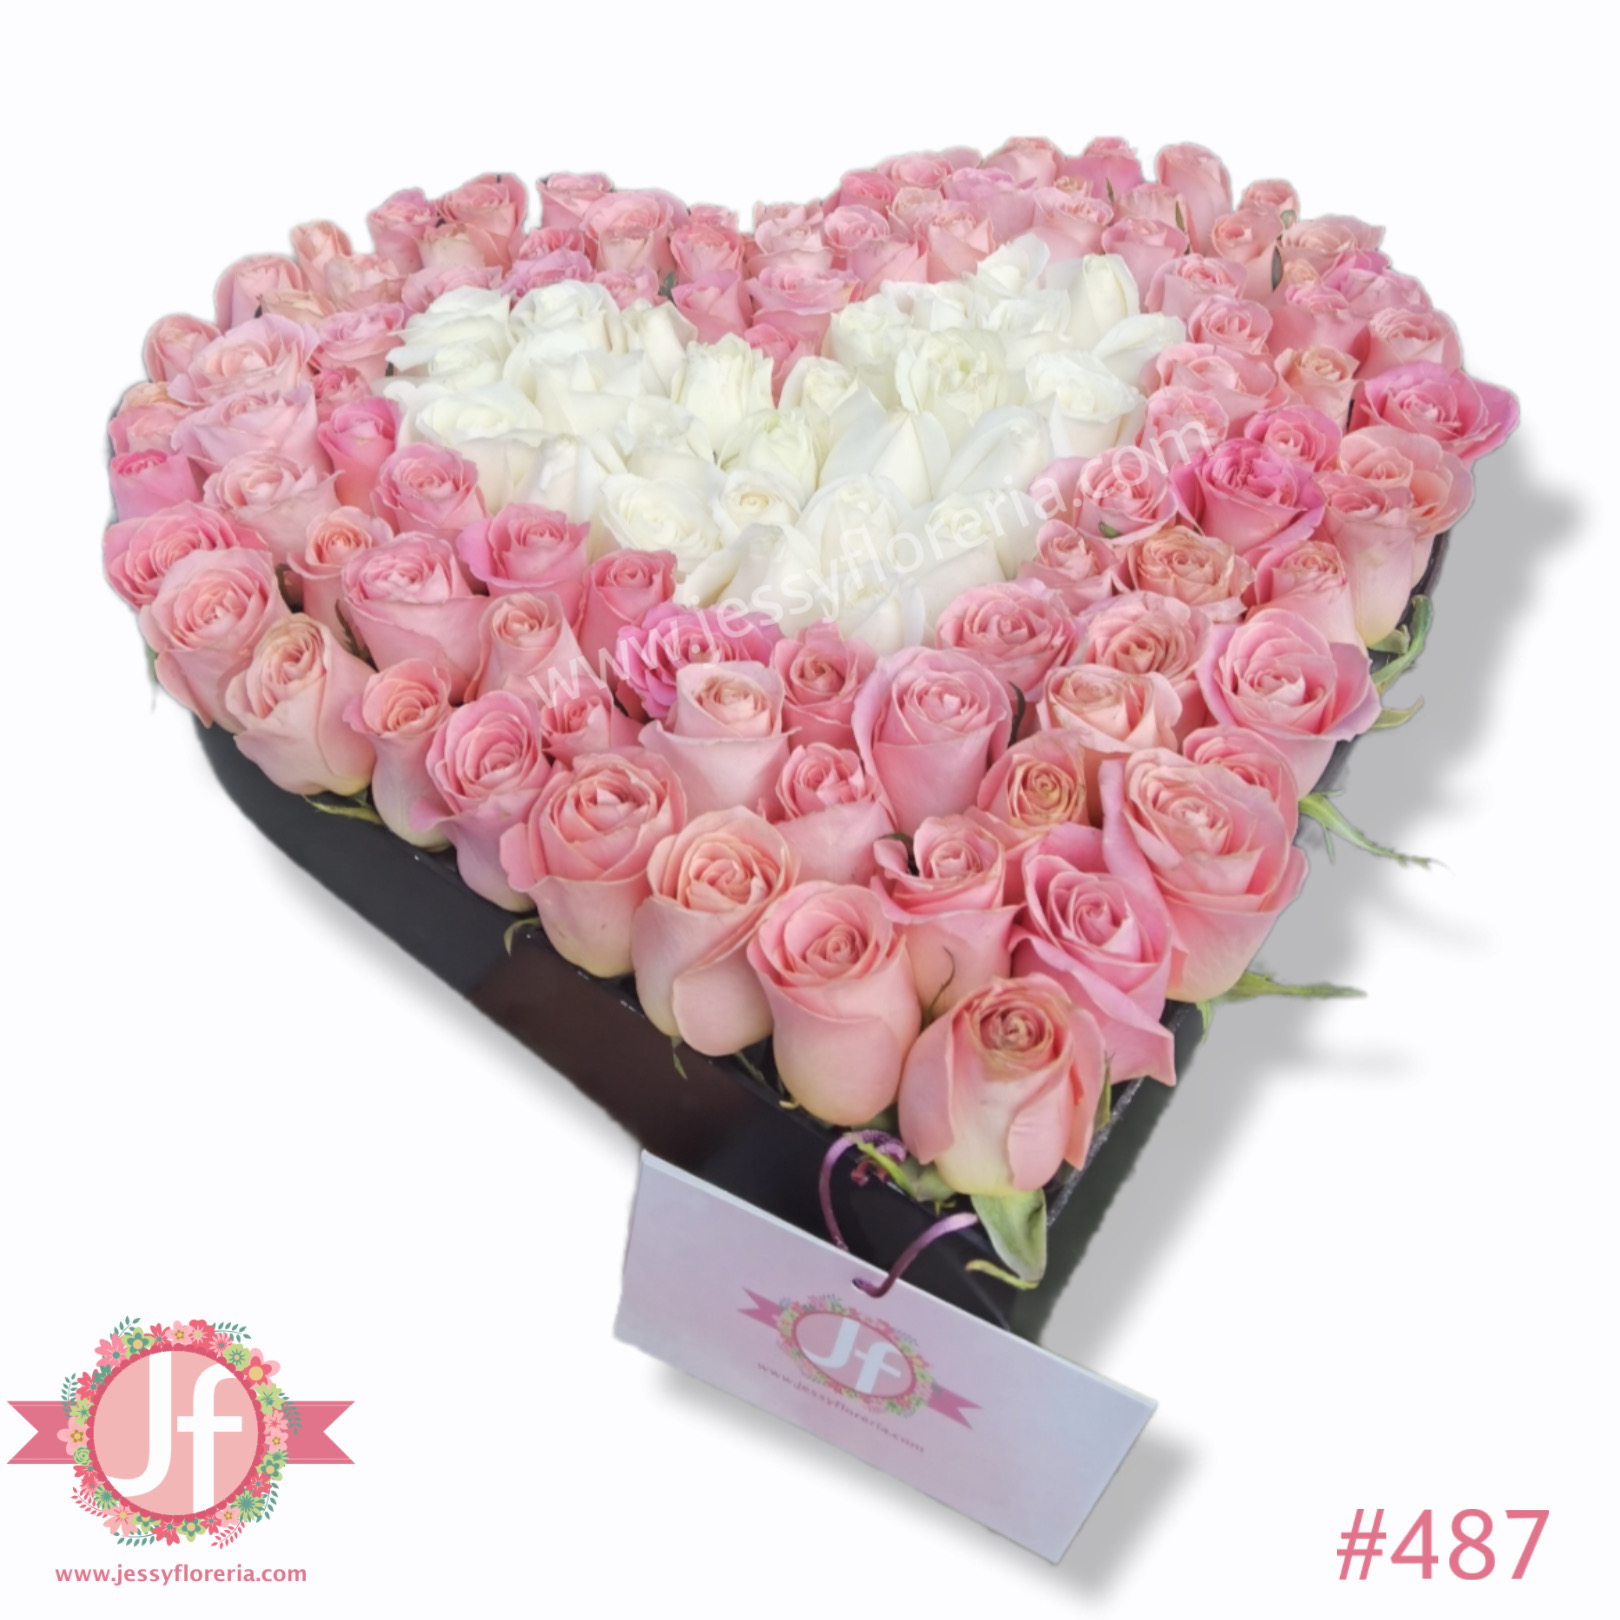 Corazón con 150 rosas rositas y blancas - Envíos GRATIS Mismo día 2 a 4 Hrs